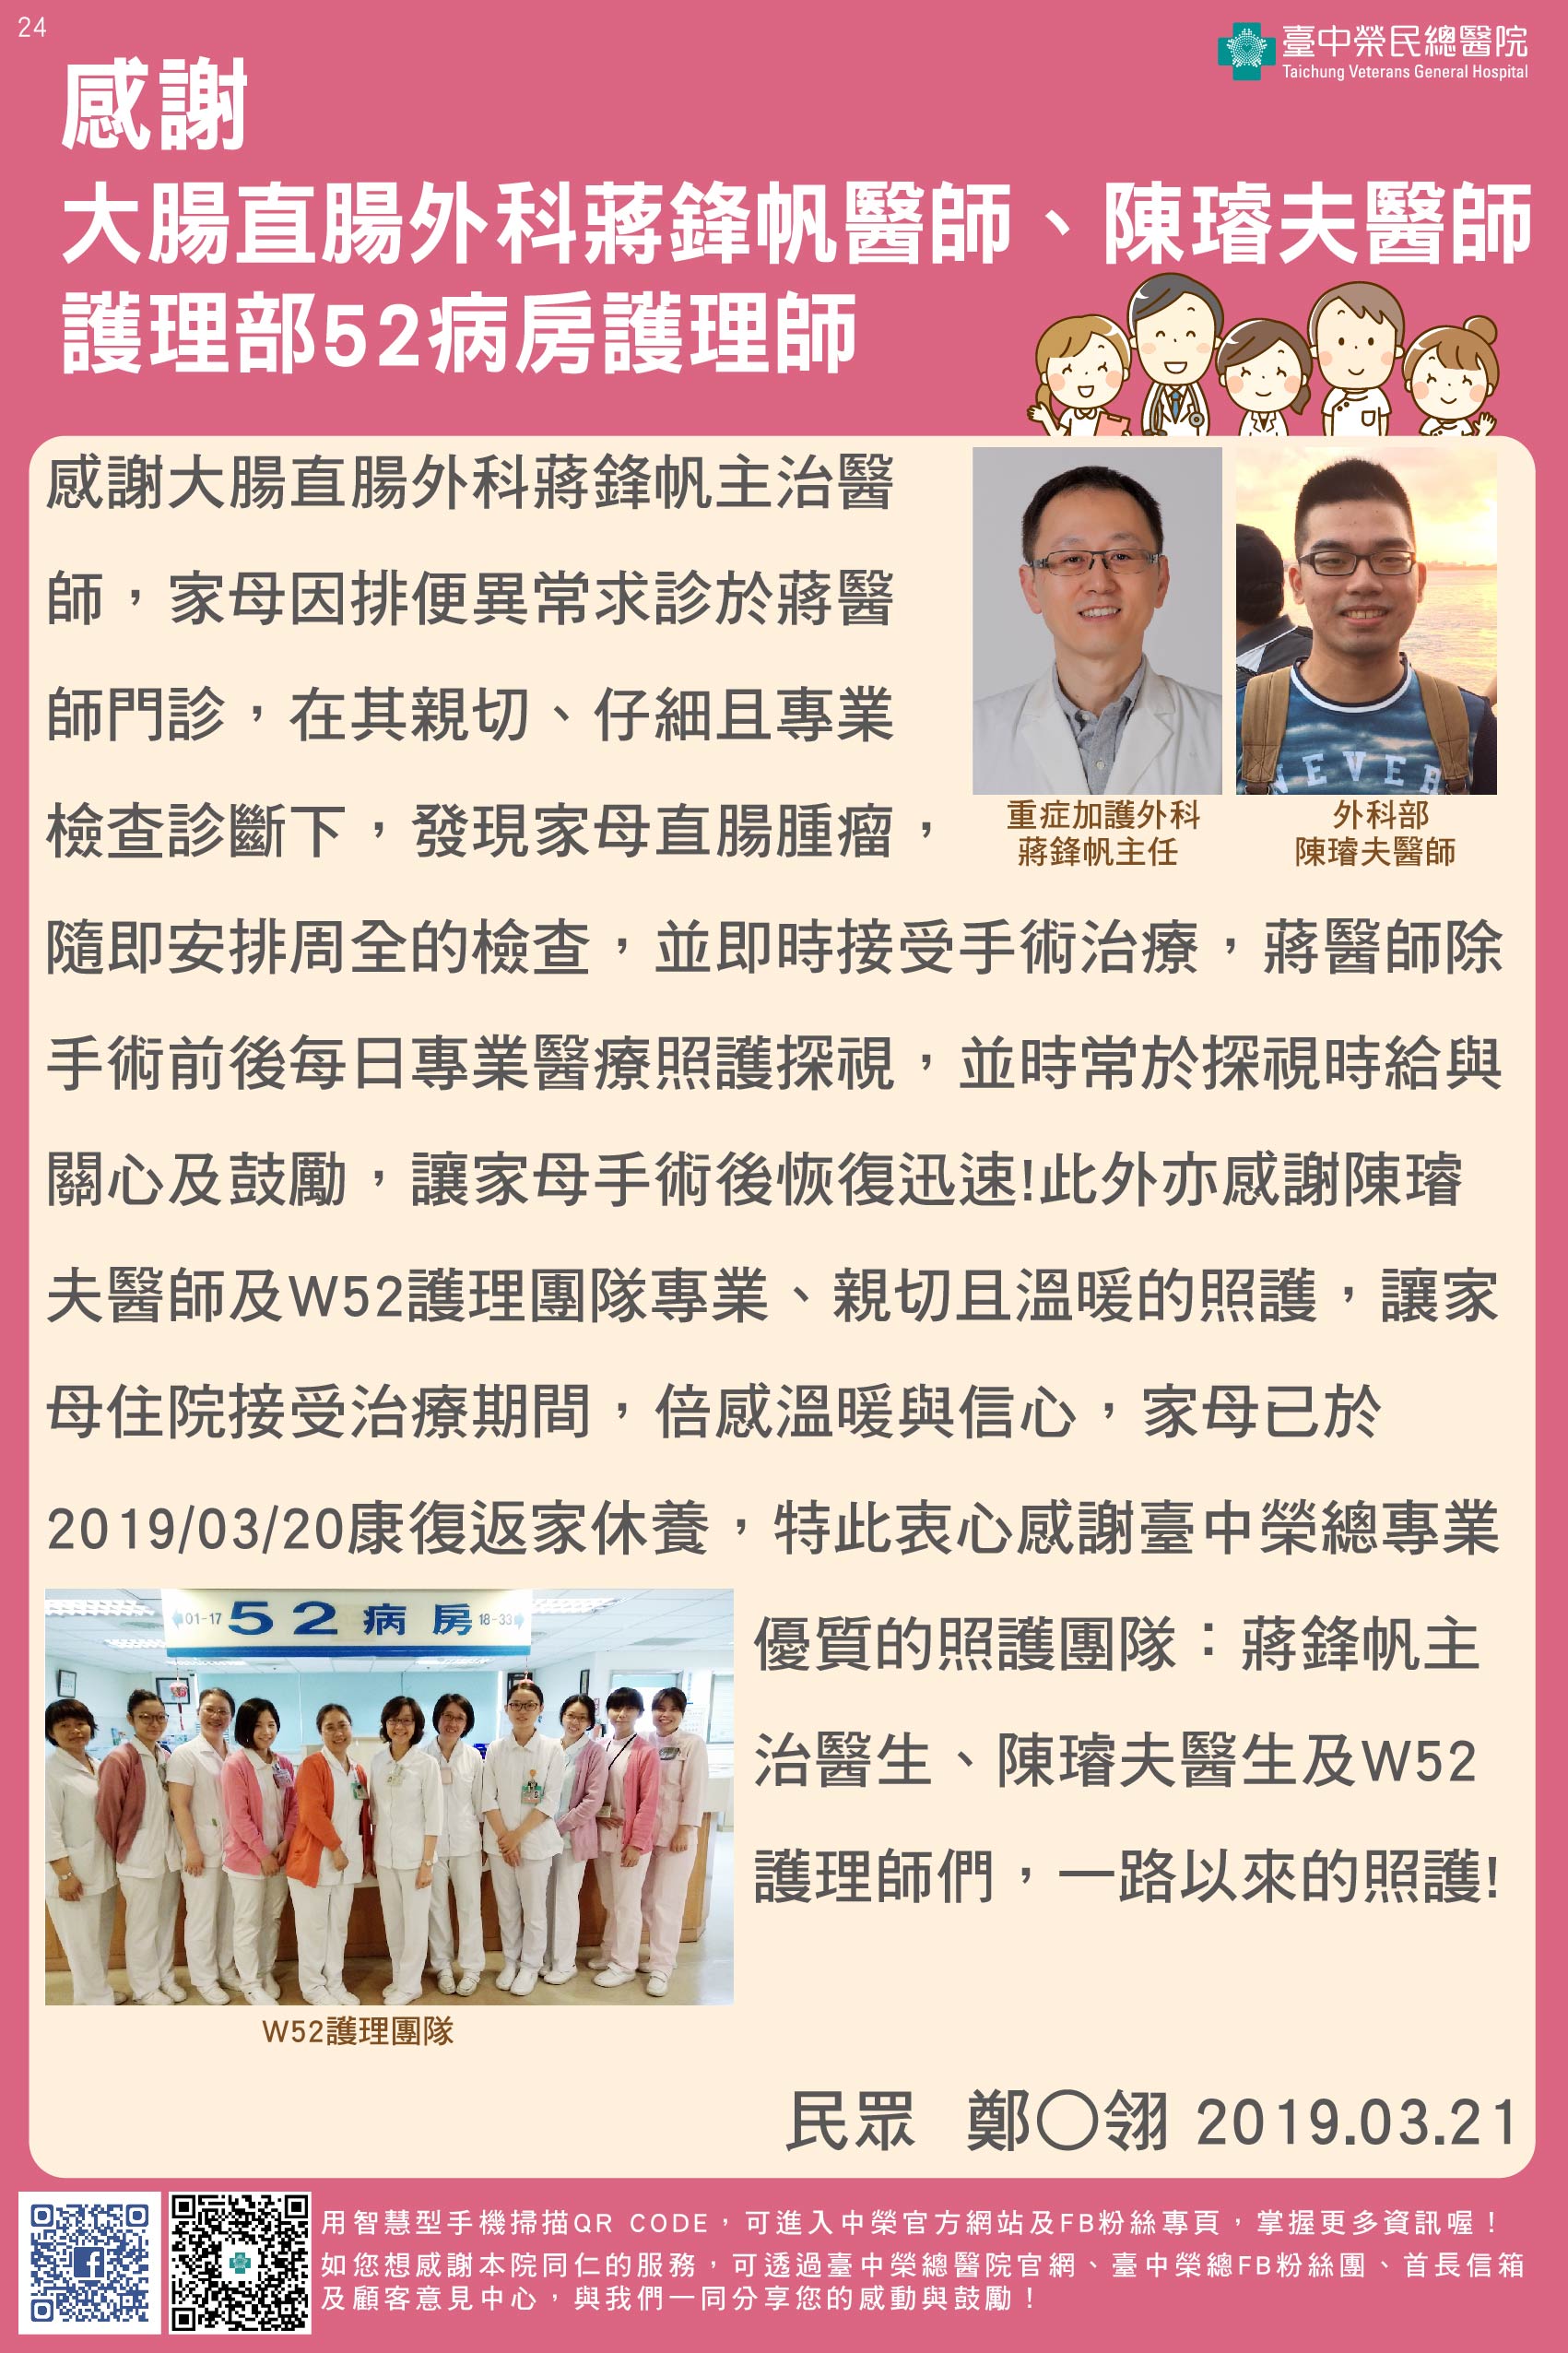 感謝大腸直腸外科蔣鋒帆醫師、陳璿夫醫師、護理部52病房護理師